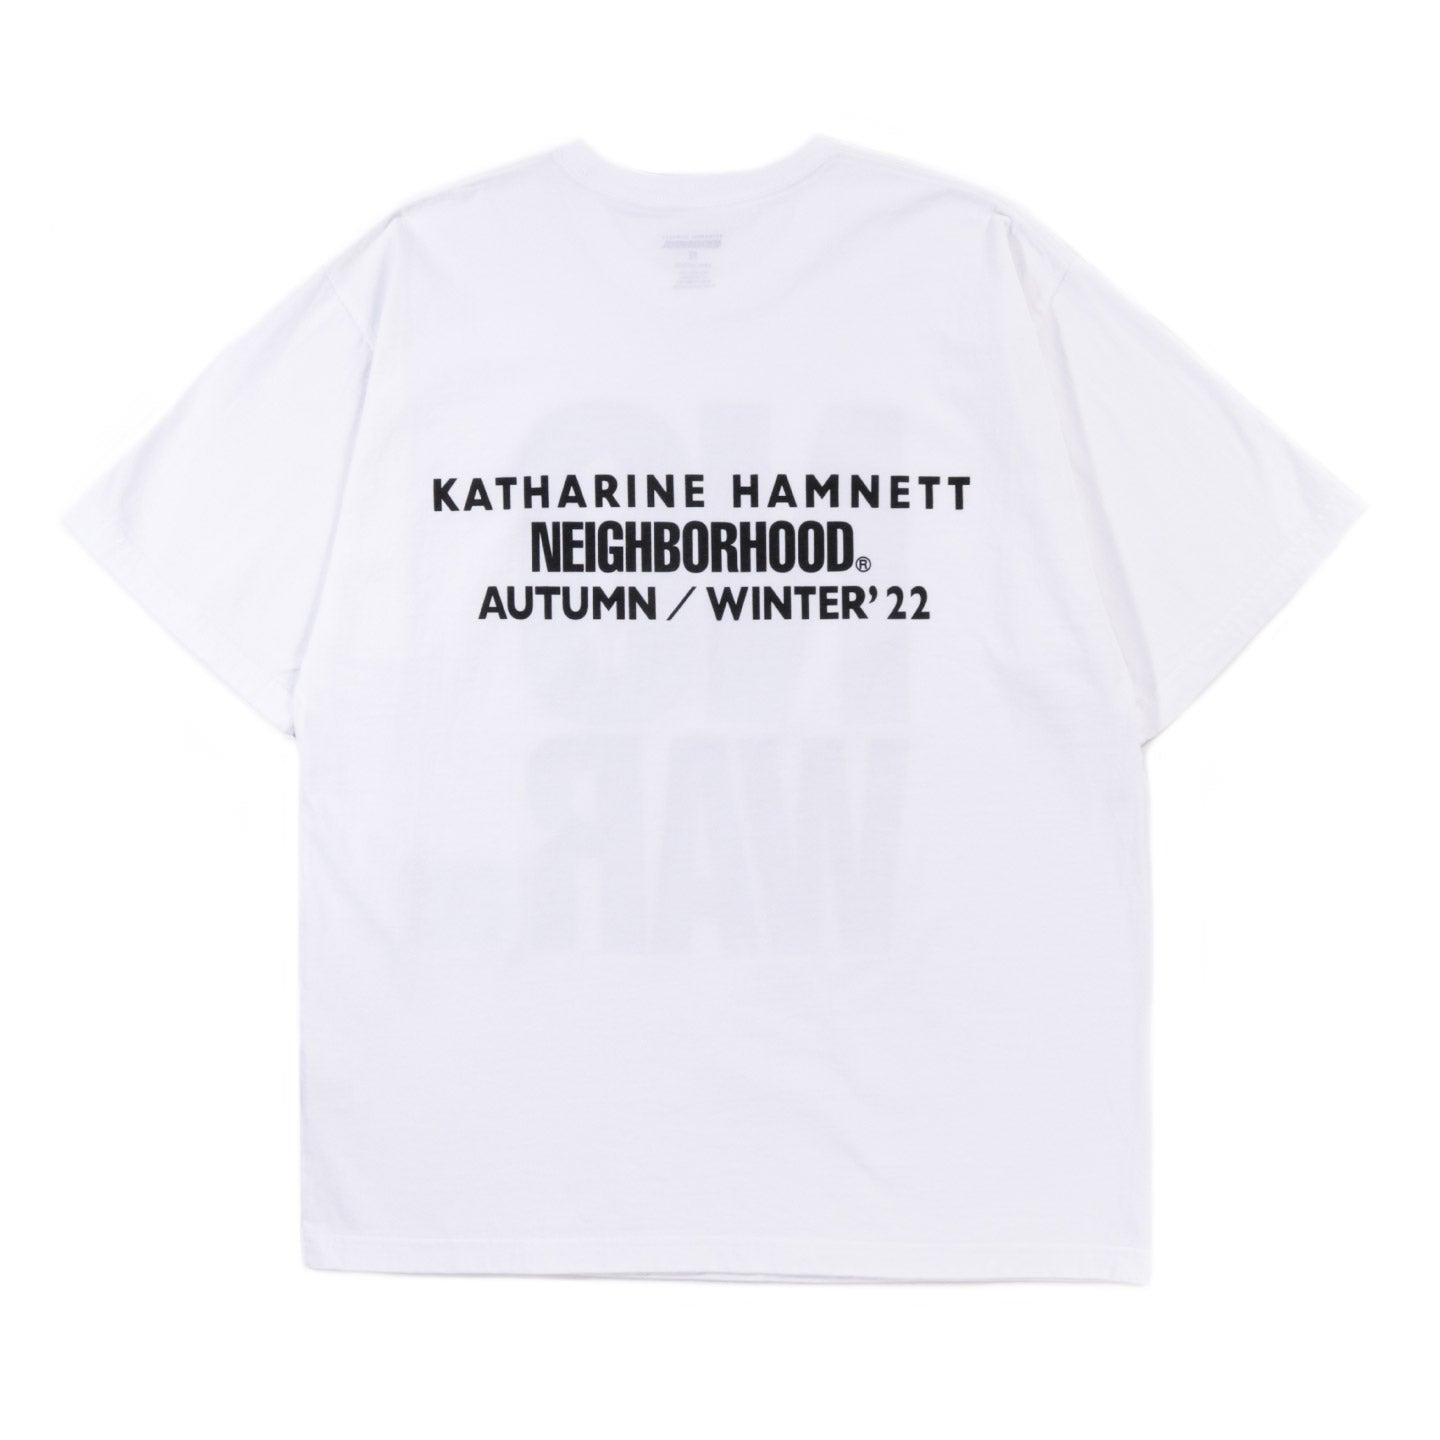 NEIGHBORHOOD KATHARINE HAMNETT T-SHIRT 1 WHITE